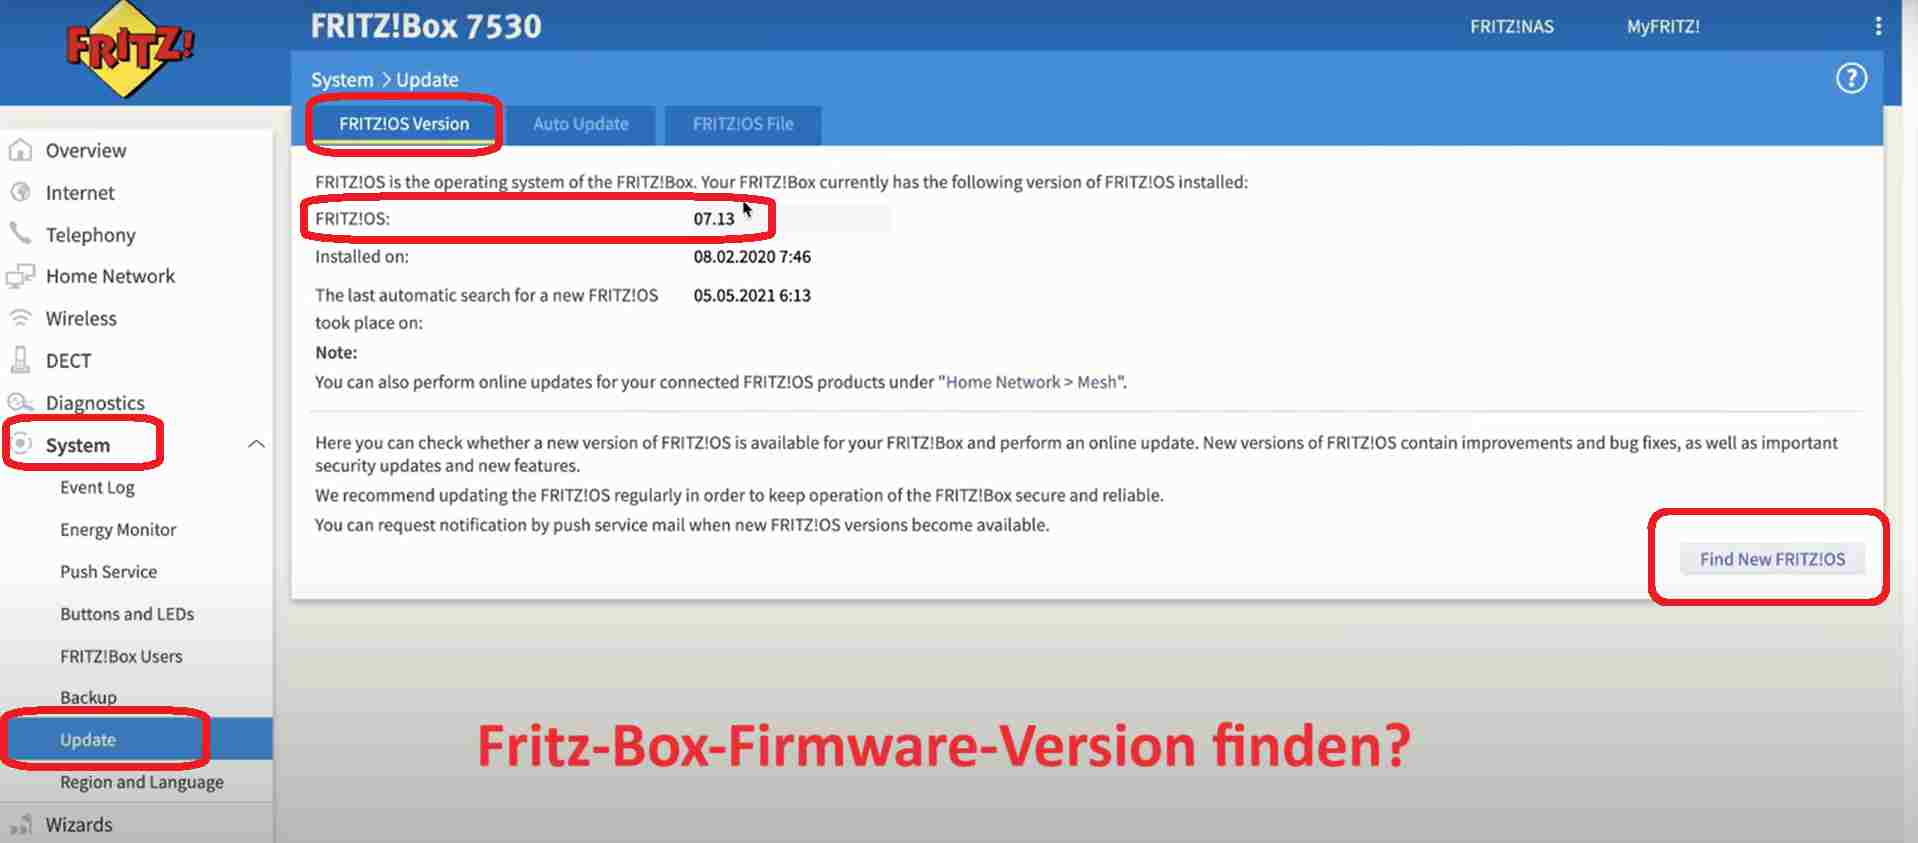 Fritz-Box-Firmware-Version finden